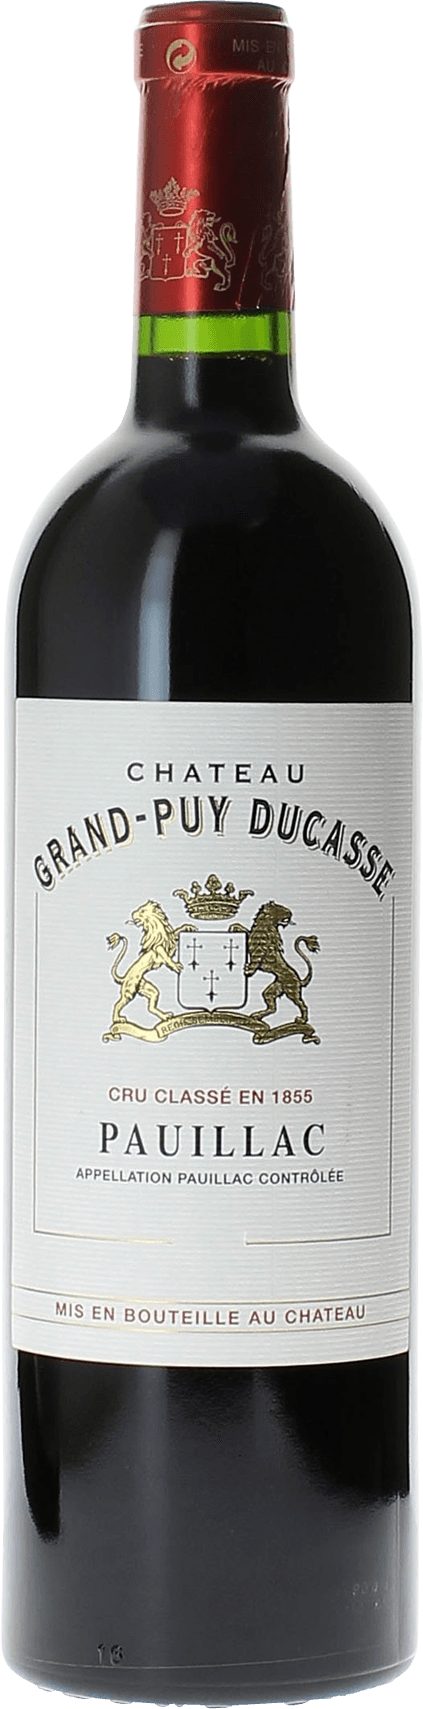 Grand puy ducasse 2018 5 me Grand cru class Pauillac, Bordeaux rouge